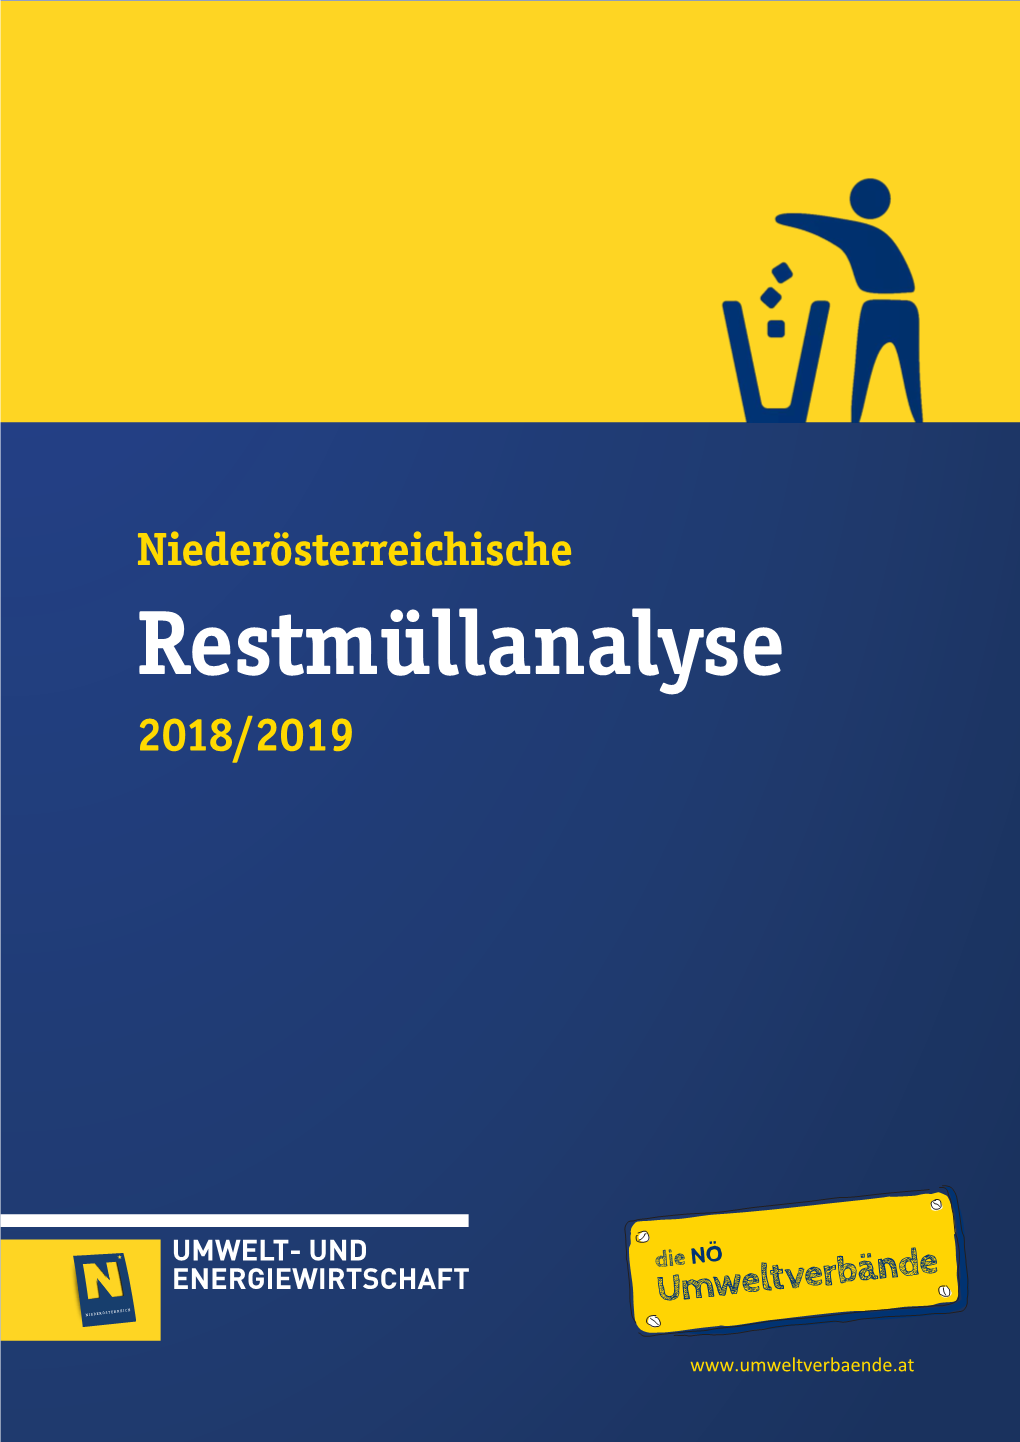 Restmüllanalyse 2018/2019